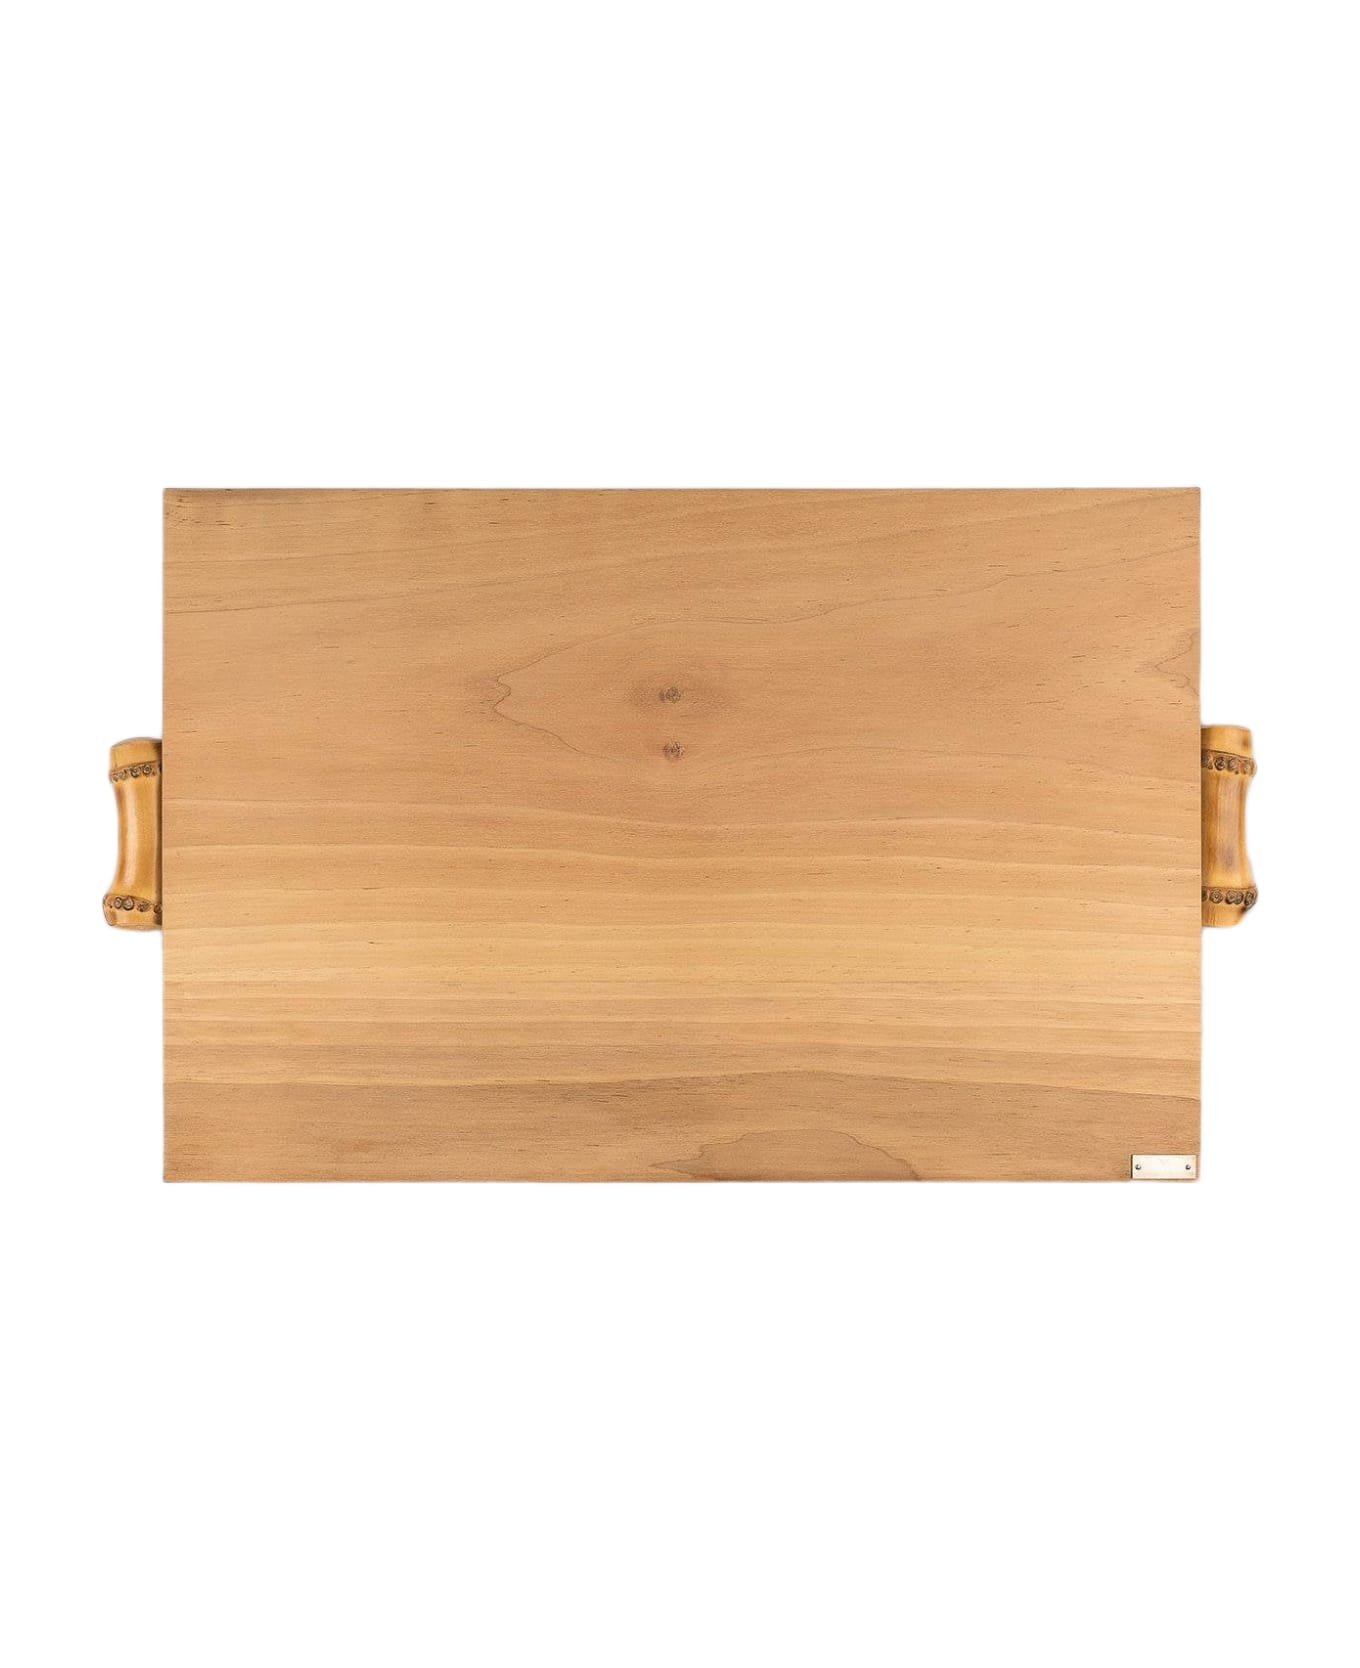 Larusmiani Walnut Wood Cutting Board  - Neutral